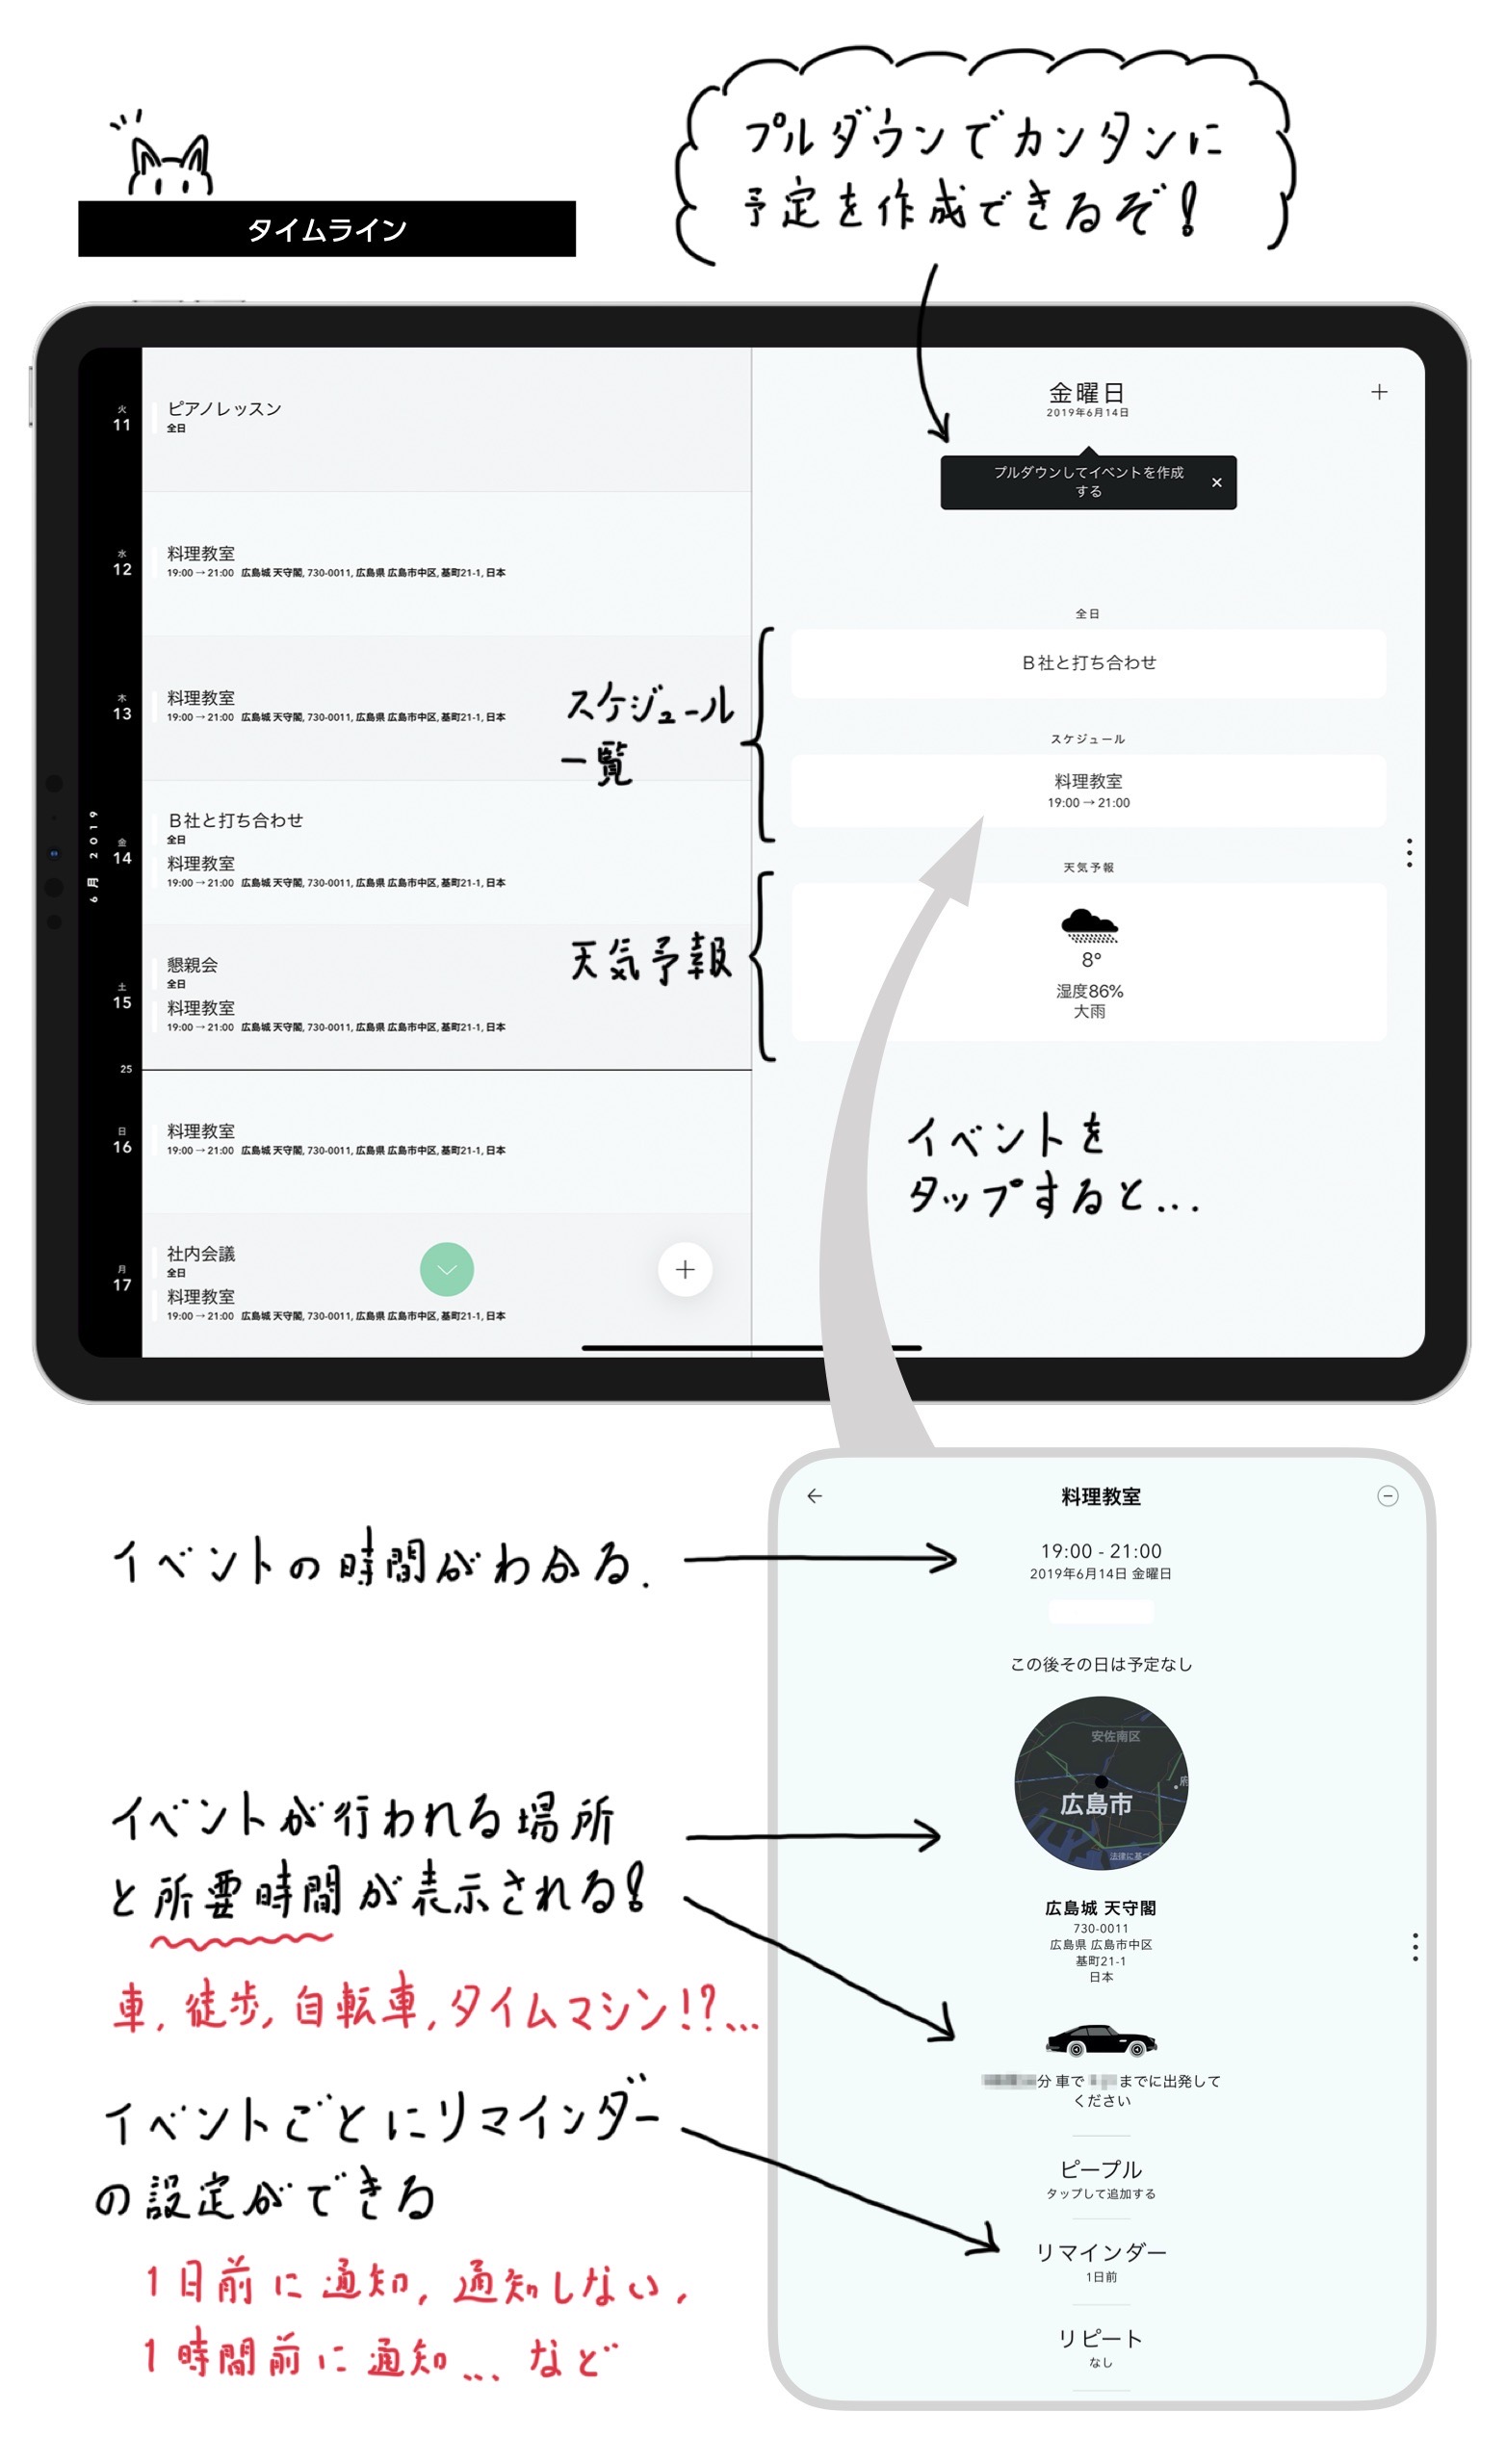 電子手帳といえば、シンプルで美しい「Timepage」とカスタマイズ重視な「Planner for iPad」の一騎討ちだと思う